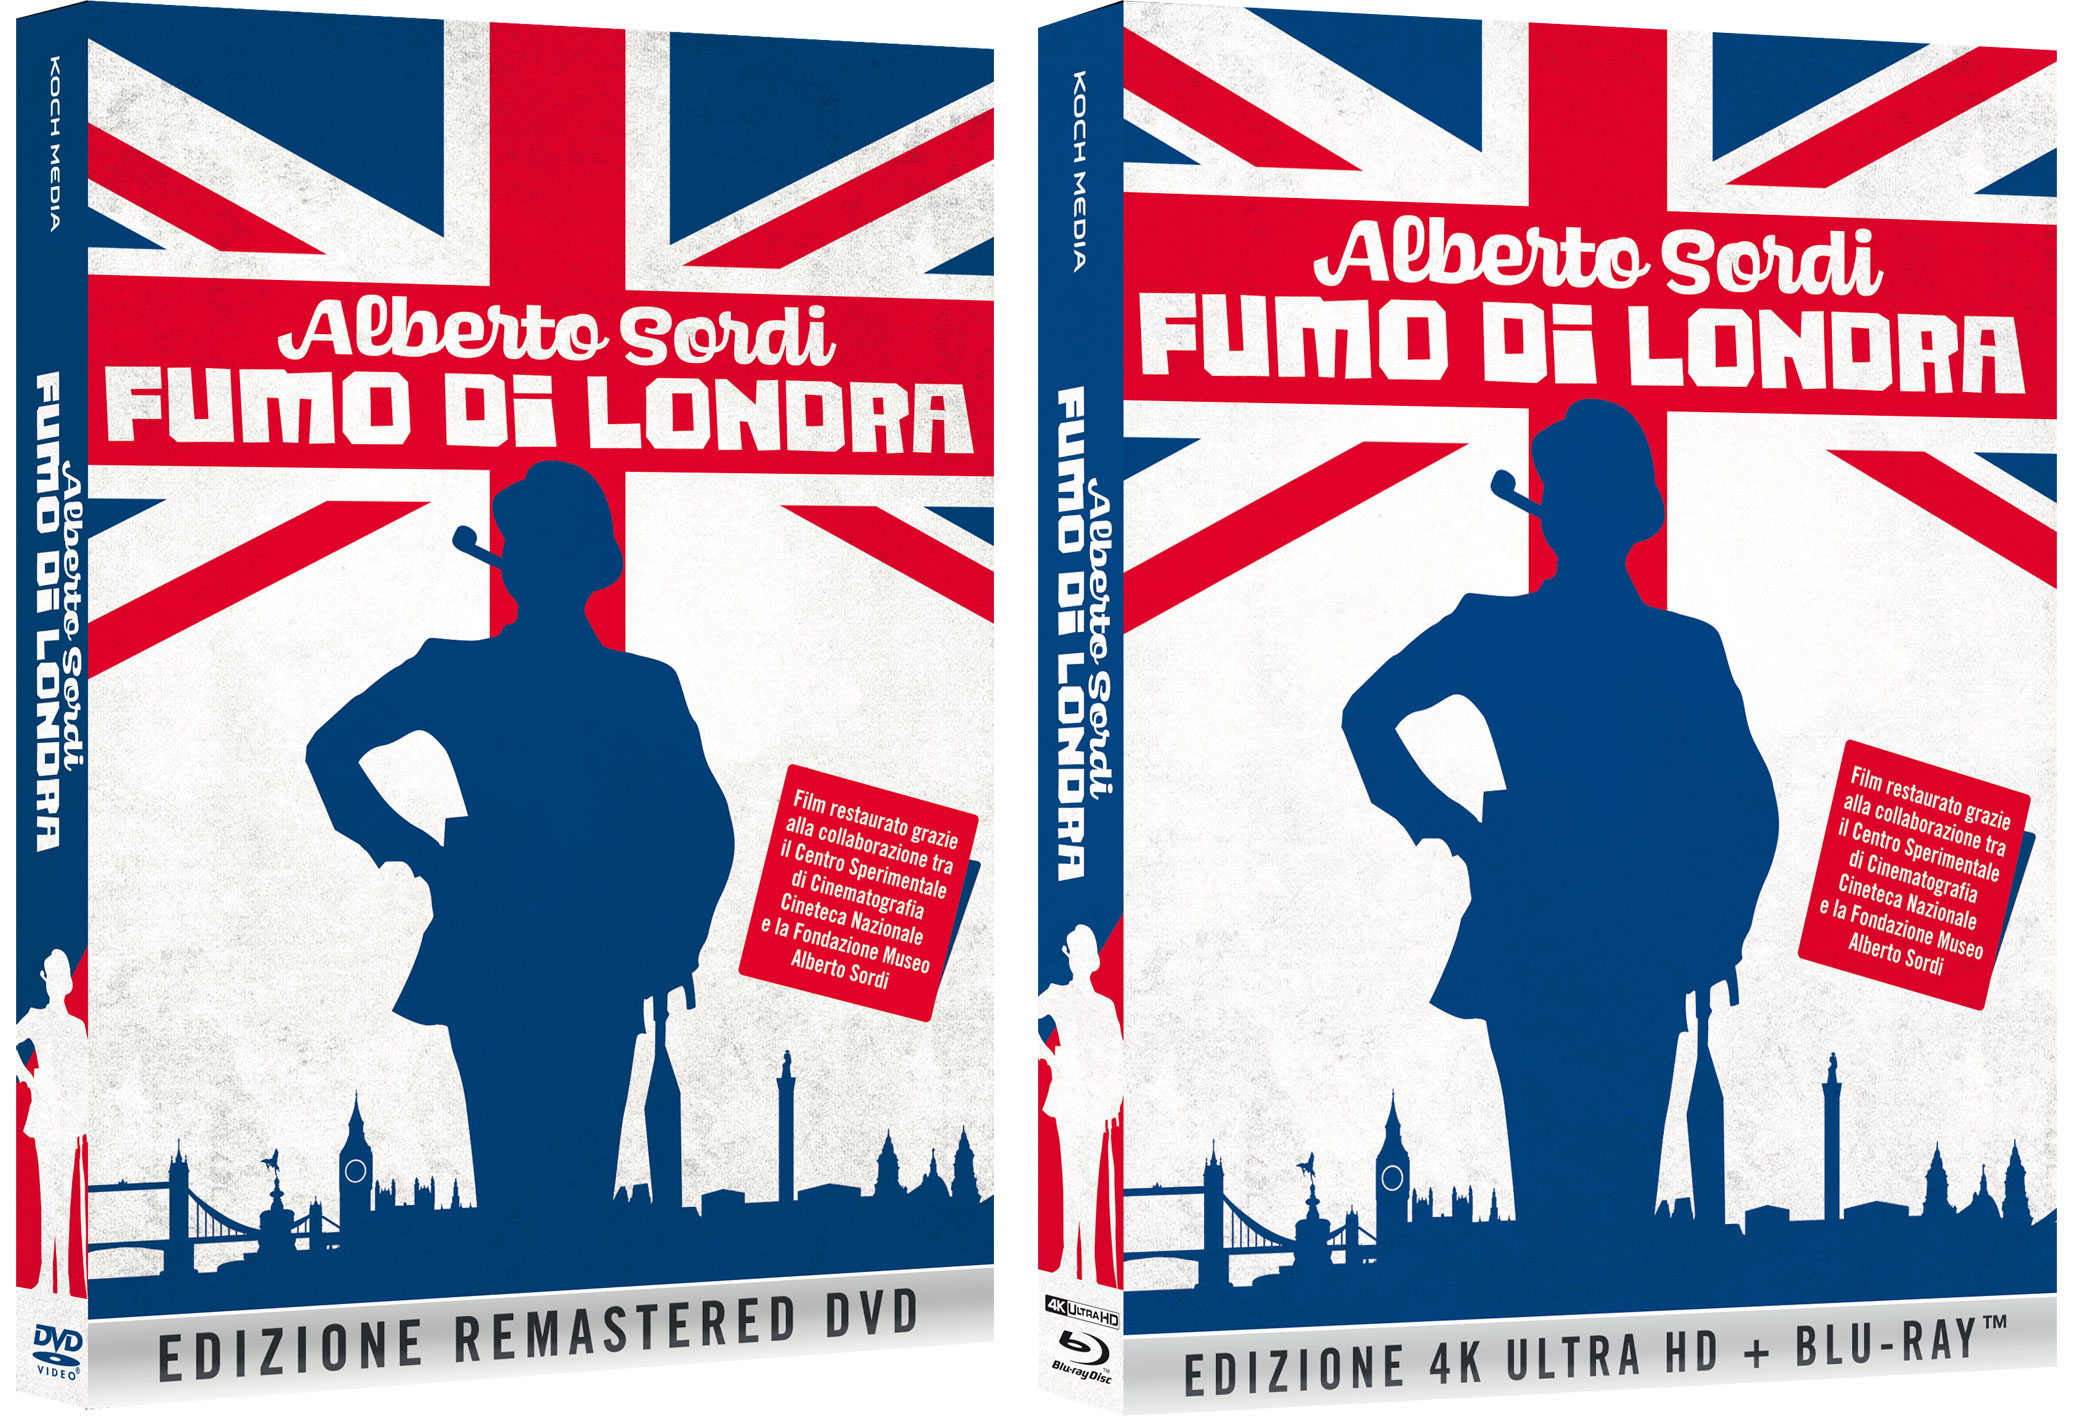 Fumo di Londra in DVD e Blu-ray